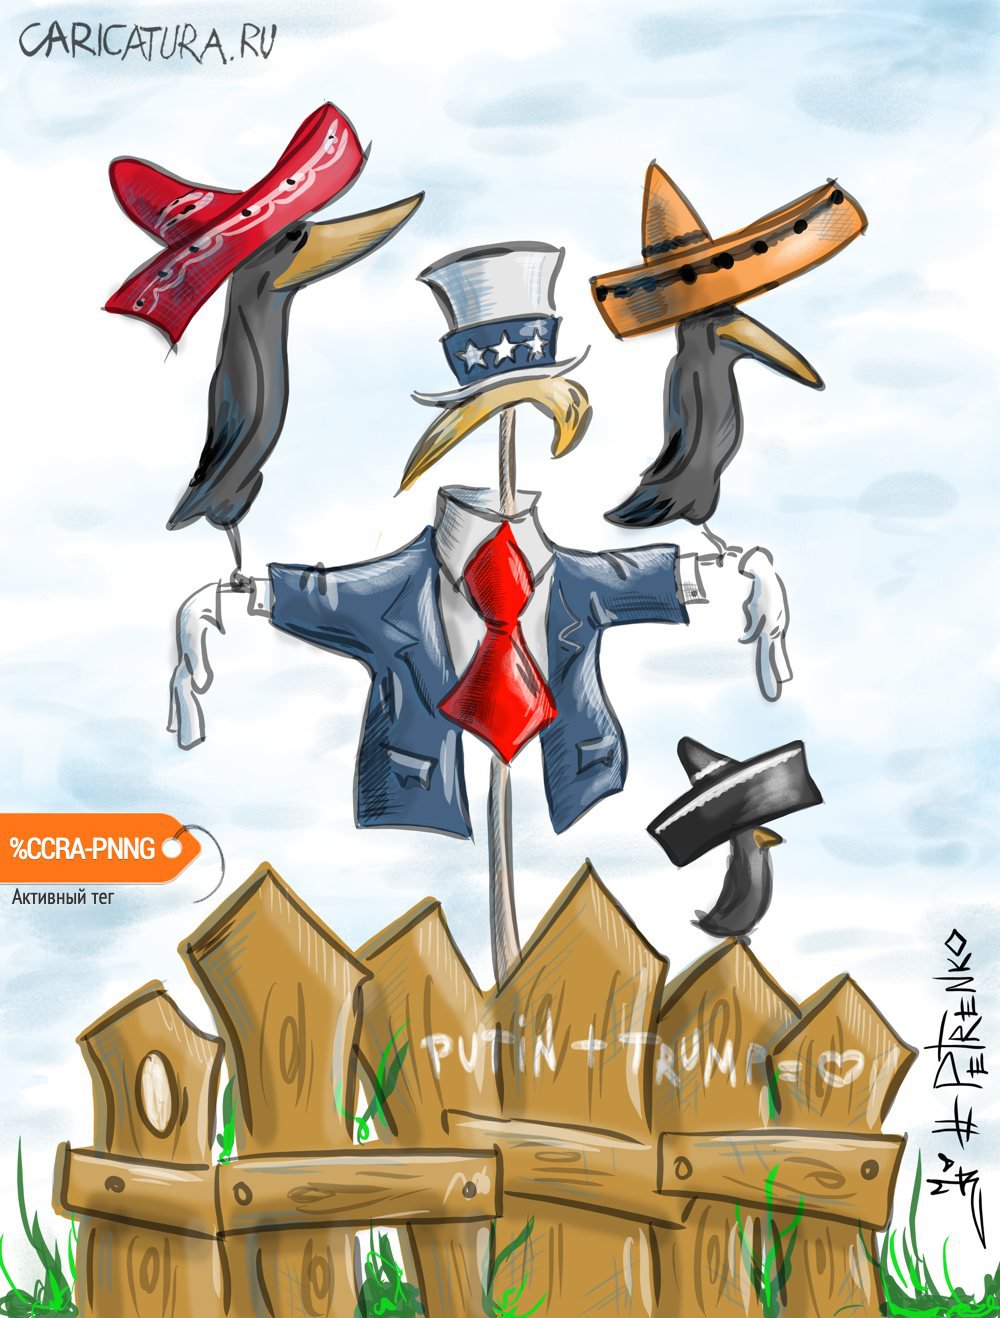 Карикатура "Великая американская стена...", Андрей Петренко